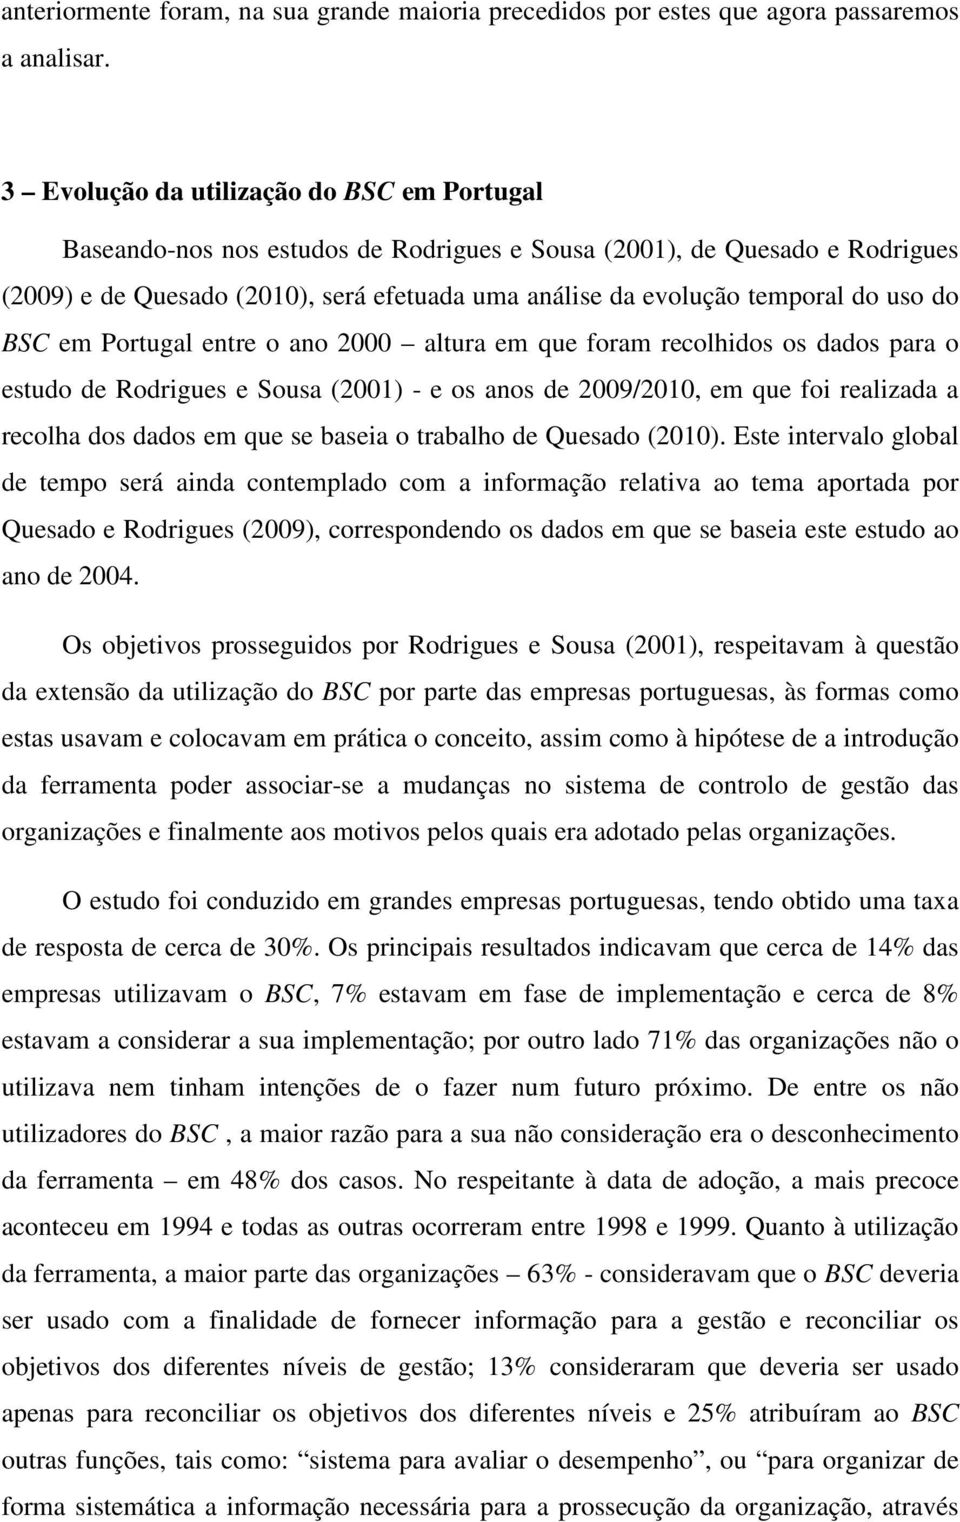 uso do BSC em Portugal entre o ano 2000 altura em que foram recolhidos os dados para o estudo de Rodrigues e Sousa (2001) - e os anos de 2009/2010, em que foi realizada a recolha dos dados em que se